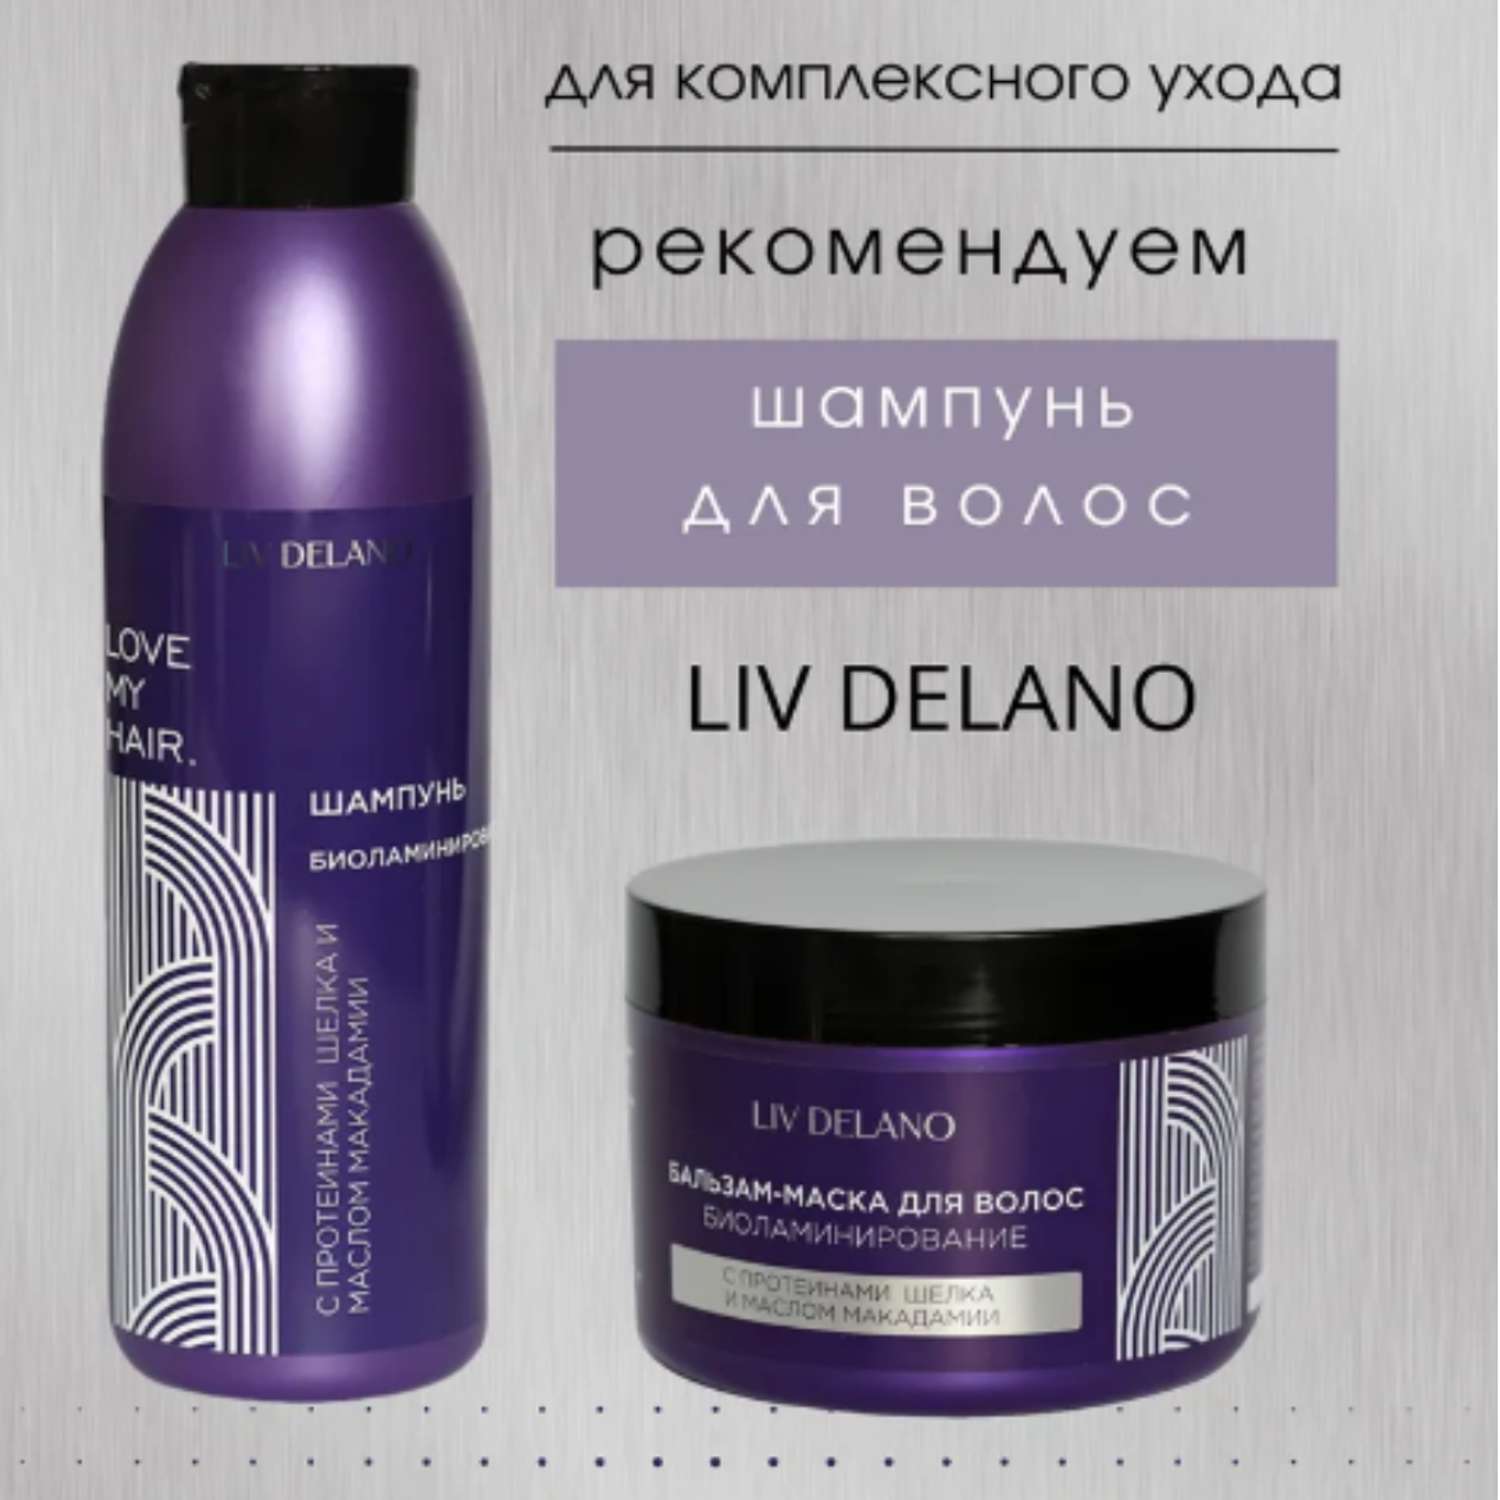 Бальзам для волос LIV DELANO биоламинирование с протеинами шёлка и маслом макадами 500 мл - фото 3